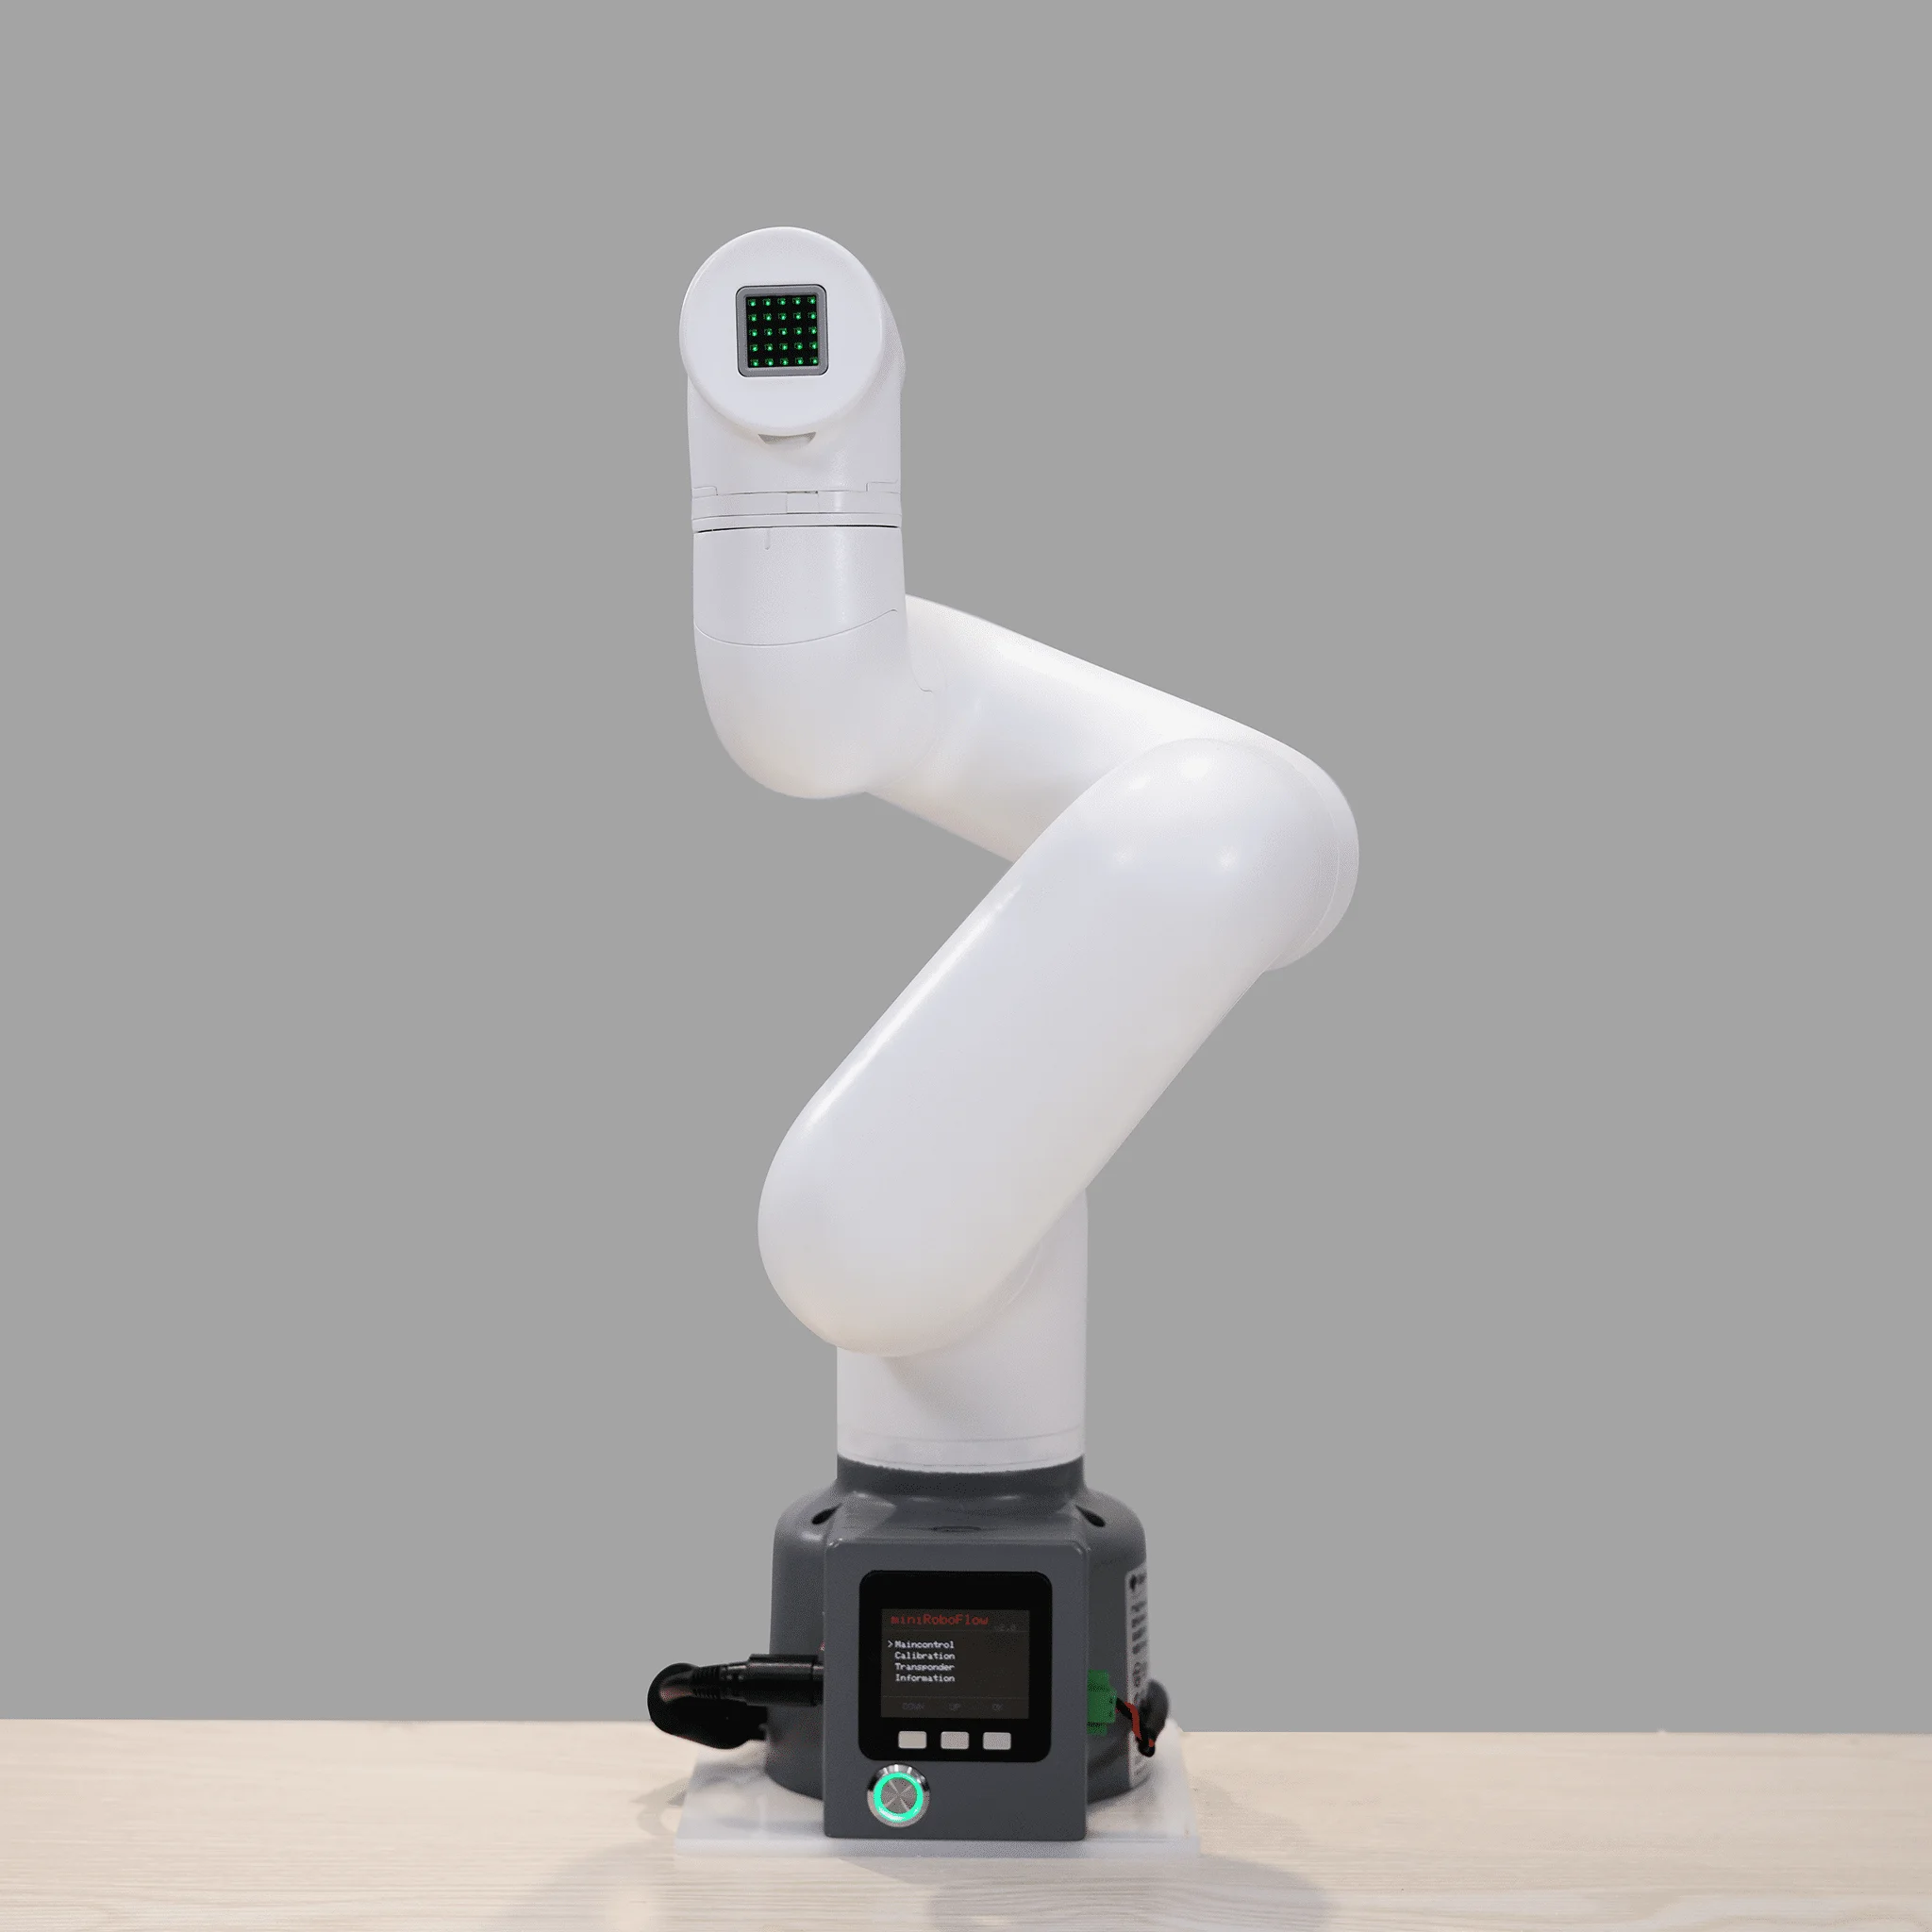 Slon robotika mycobot 320 M5-2022 1KG užitečné zatížení collaborative robot robotické ruka ploše robot ruka komerční 6 dof robotické ruka